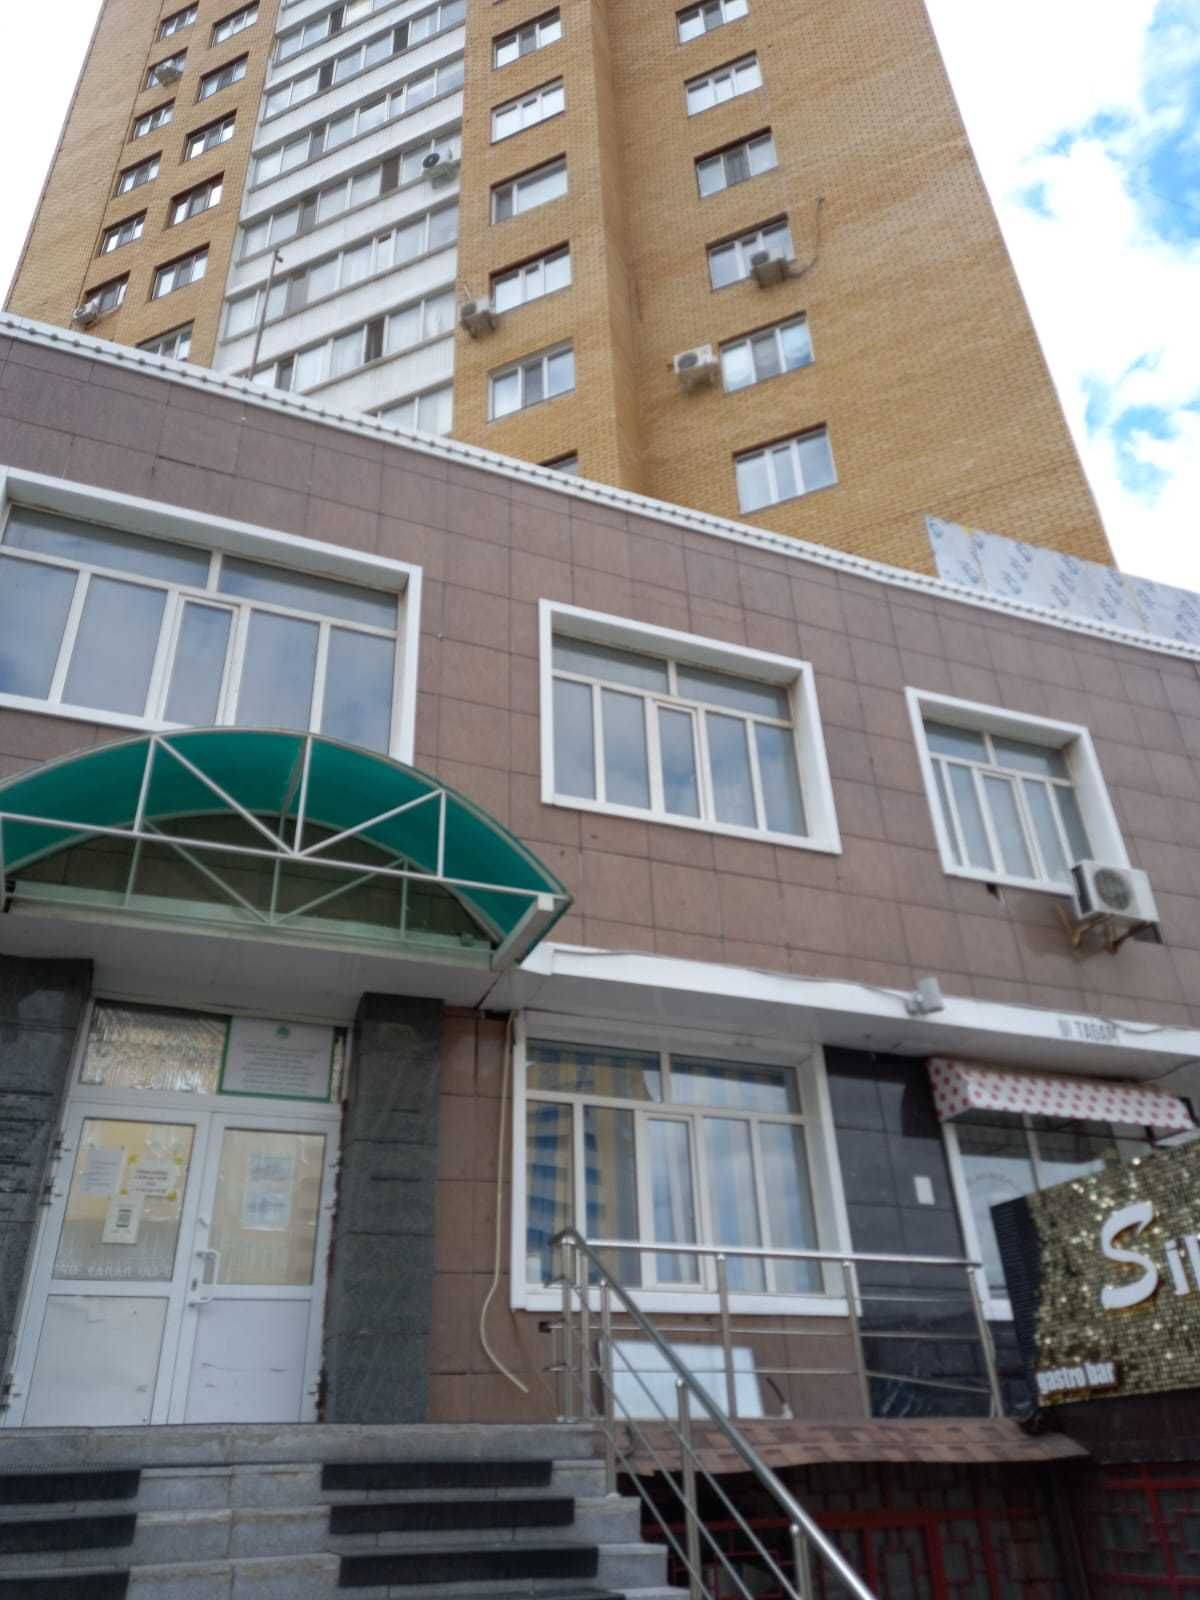 Продам 1-комнатную квартиру в центре Алматинского района